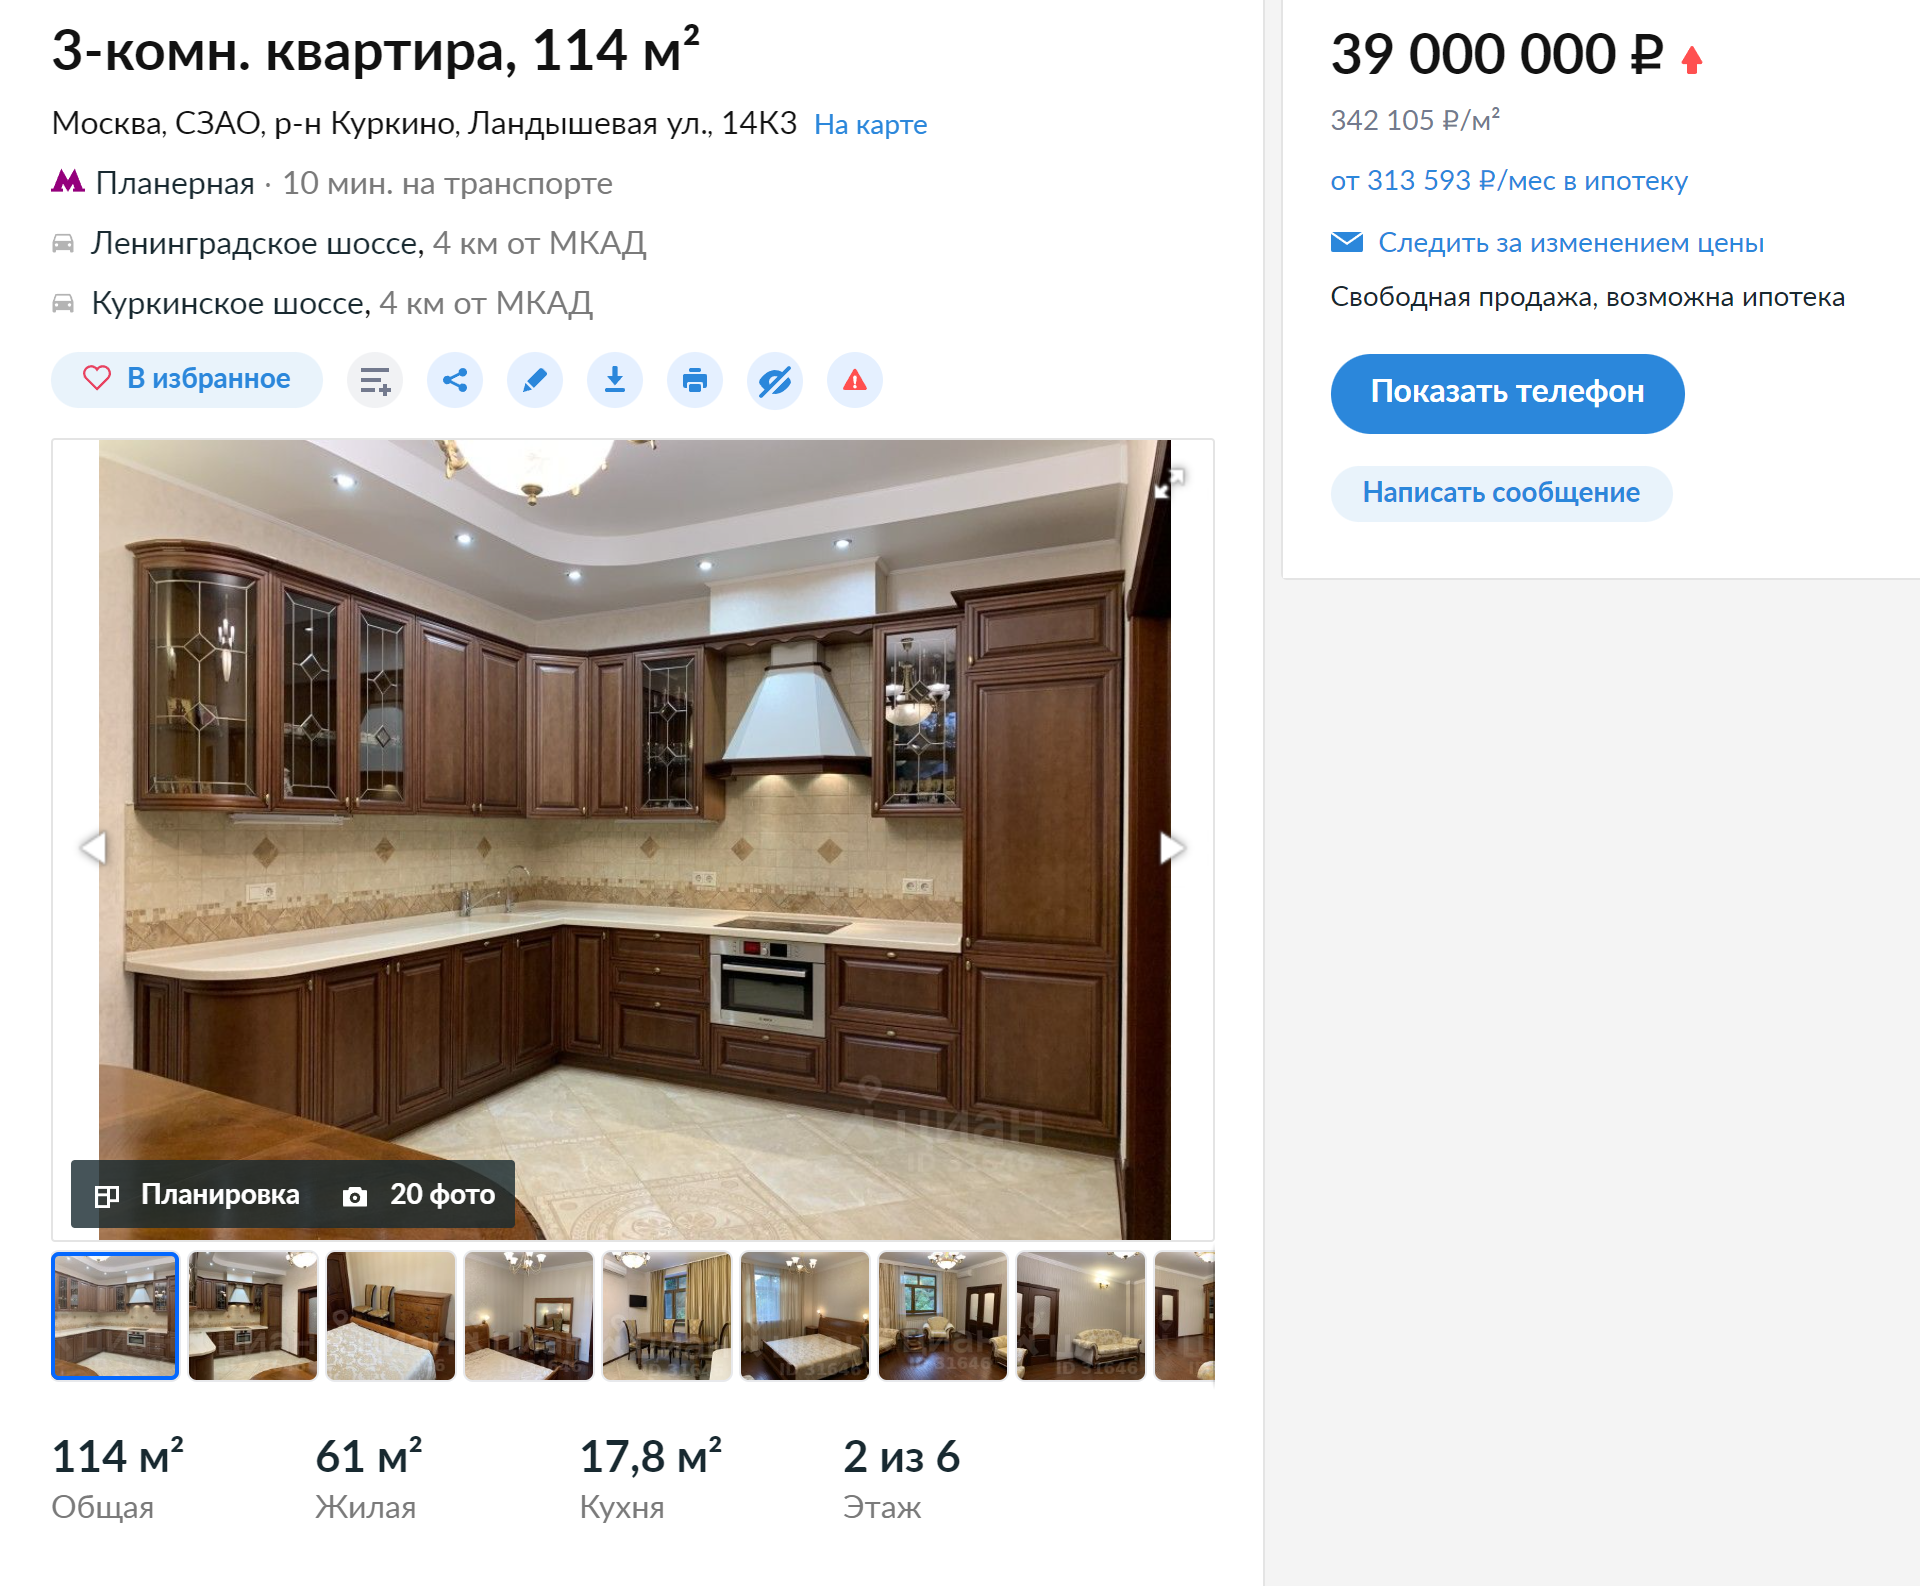 Эта трехкомнатная квартира 114 м² расположена в элитном жилом комплексе. Источник: cian.ru